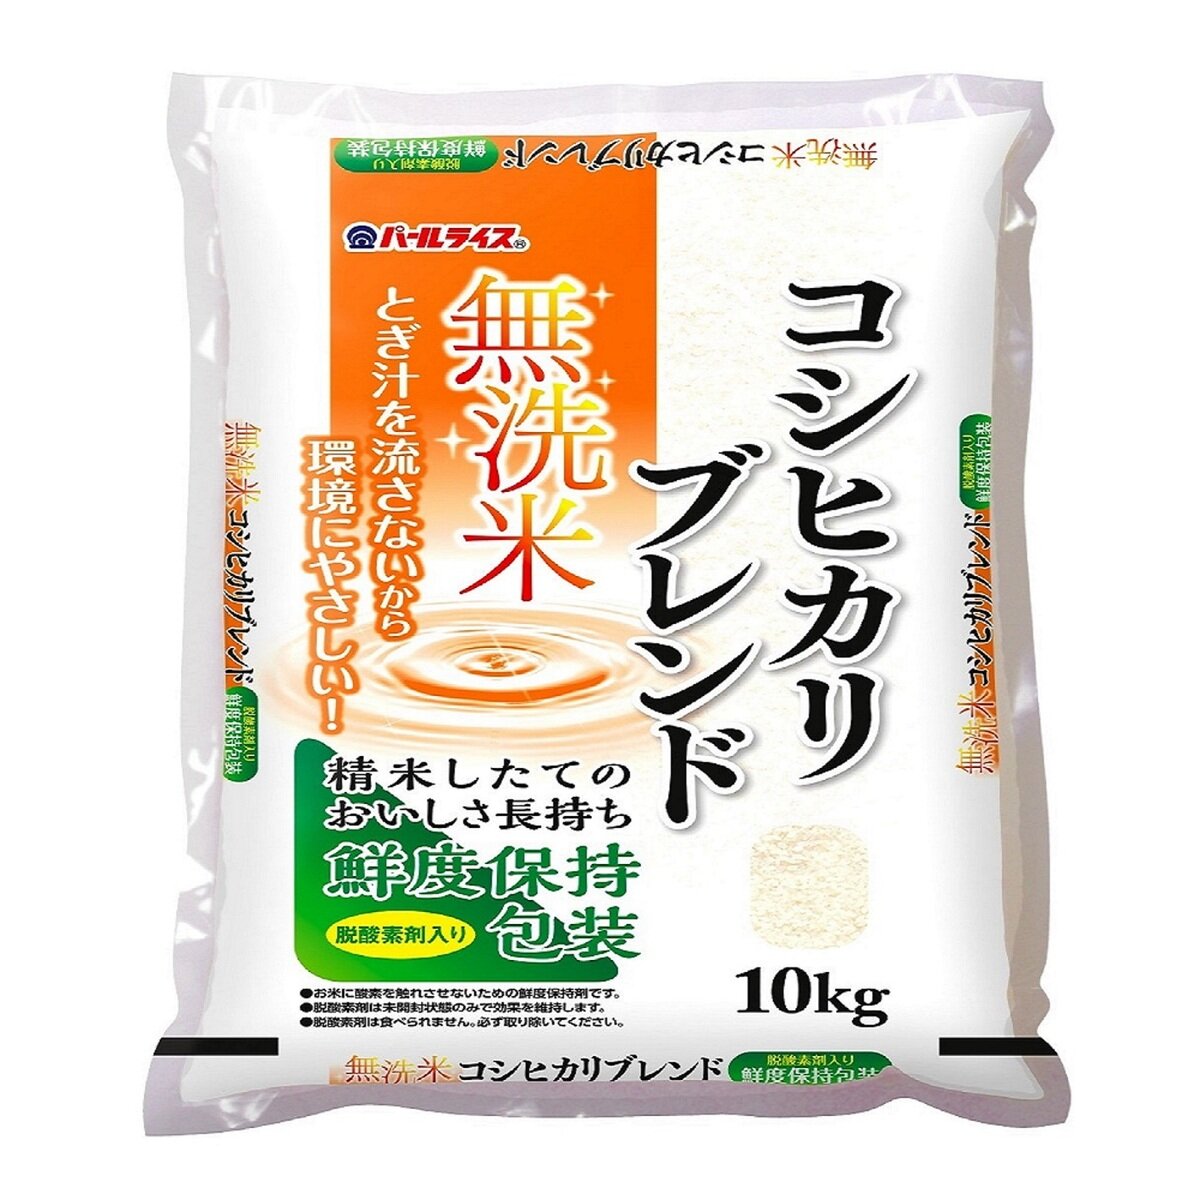 全農パールライス 無洗米コシヒカリブレンド 10kg | Costco Japan